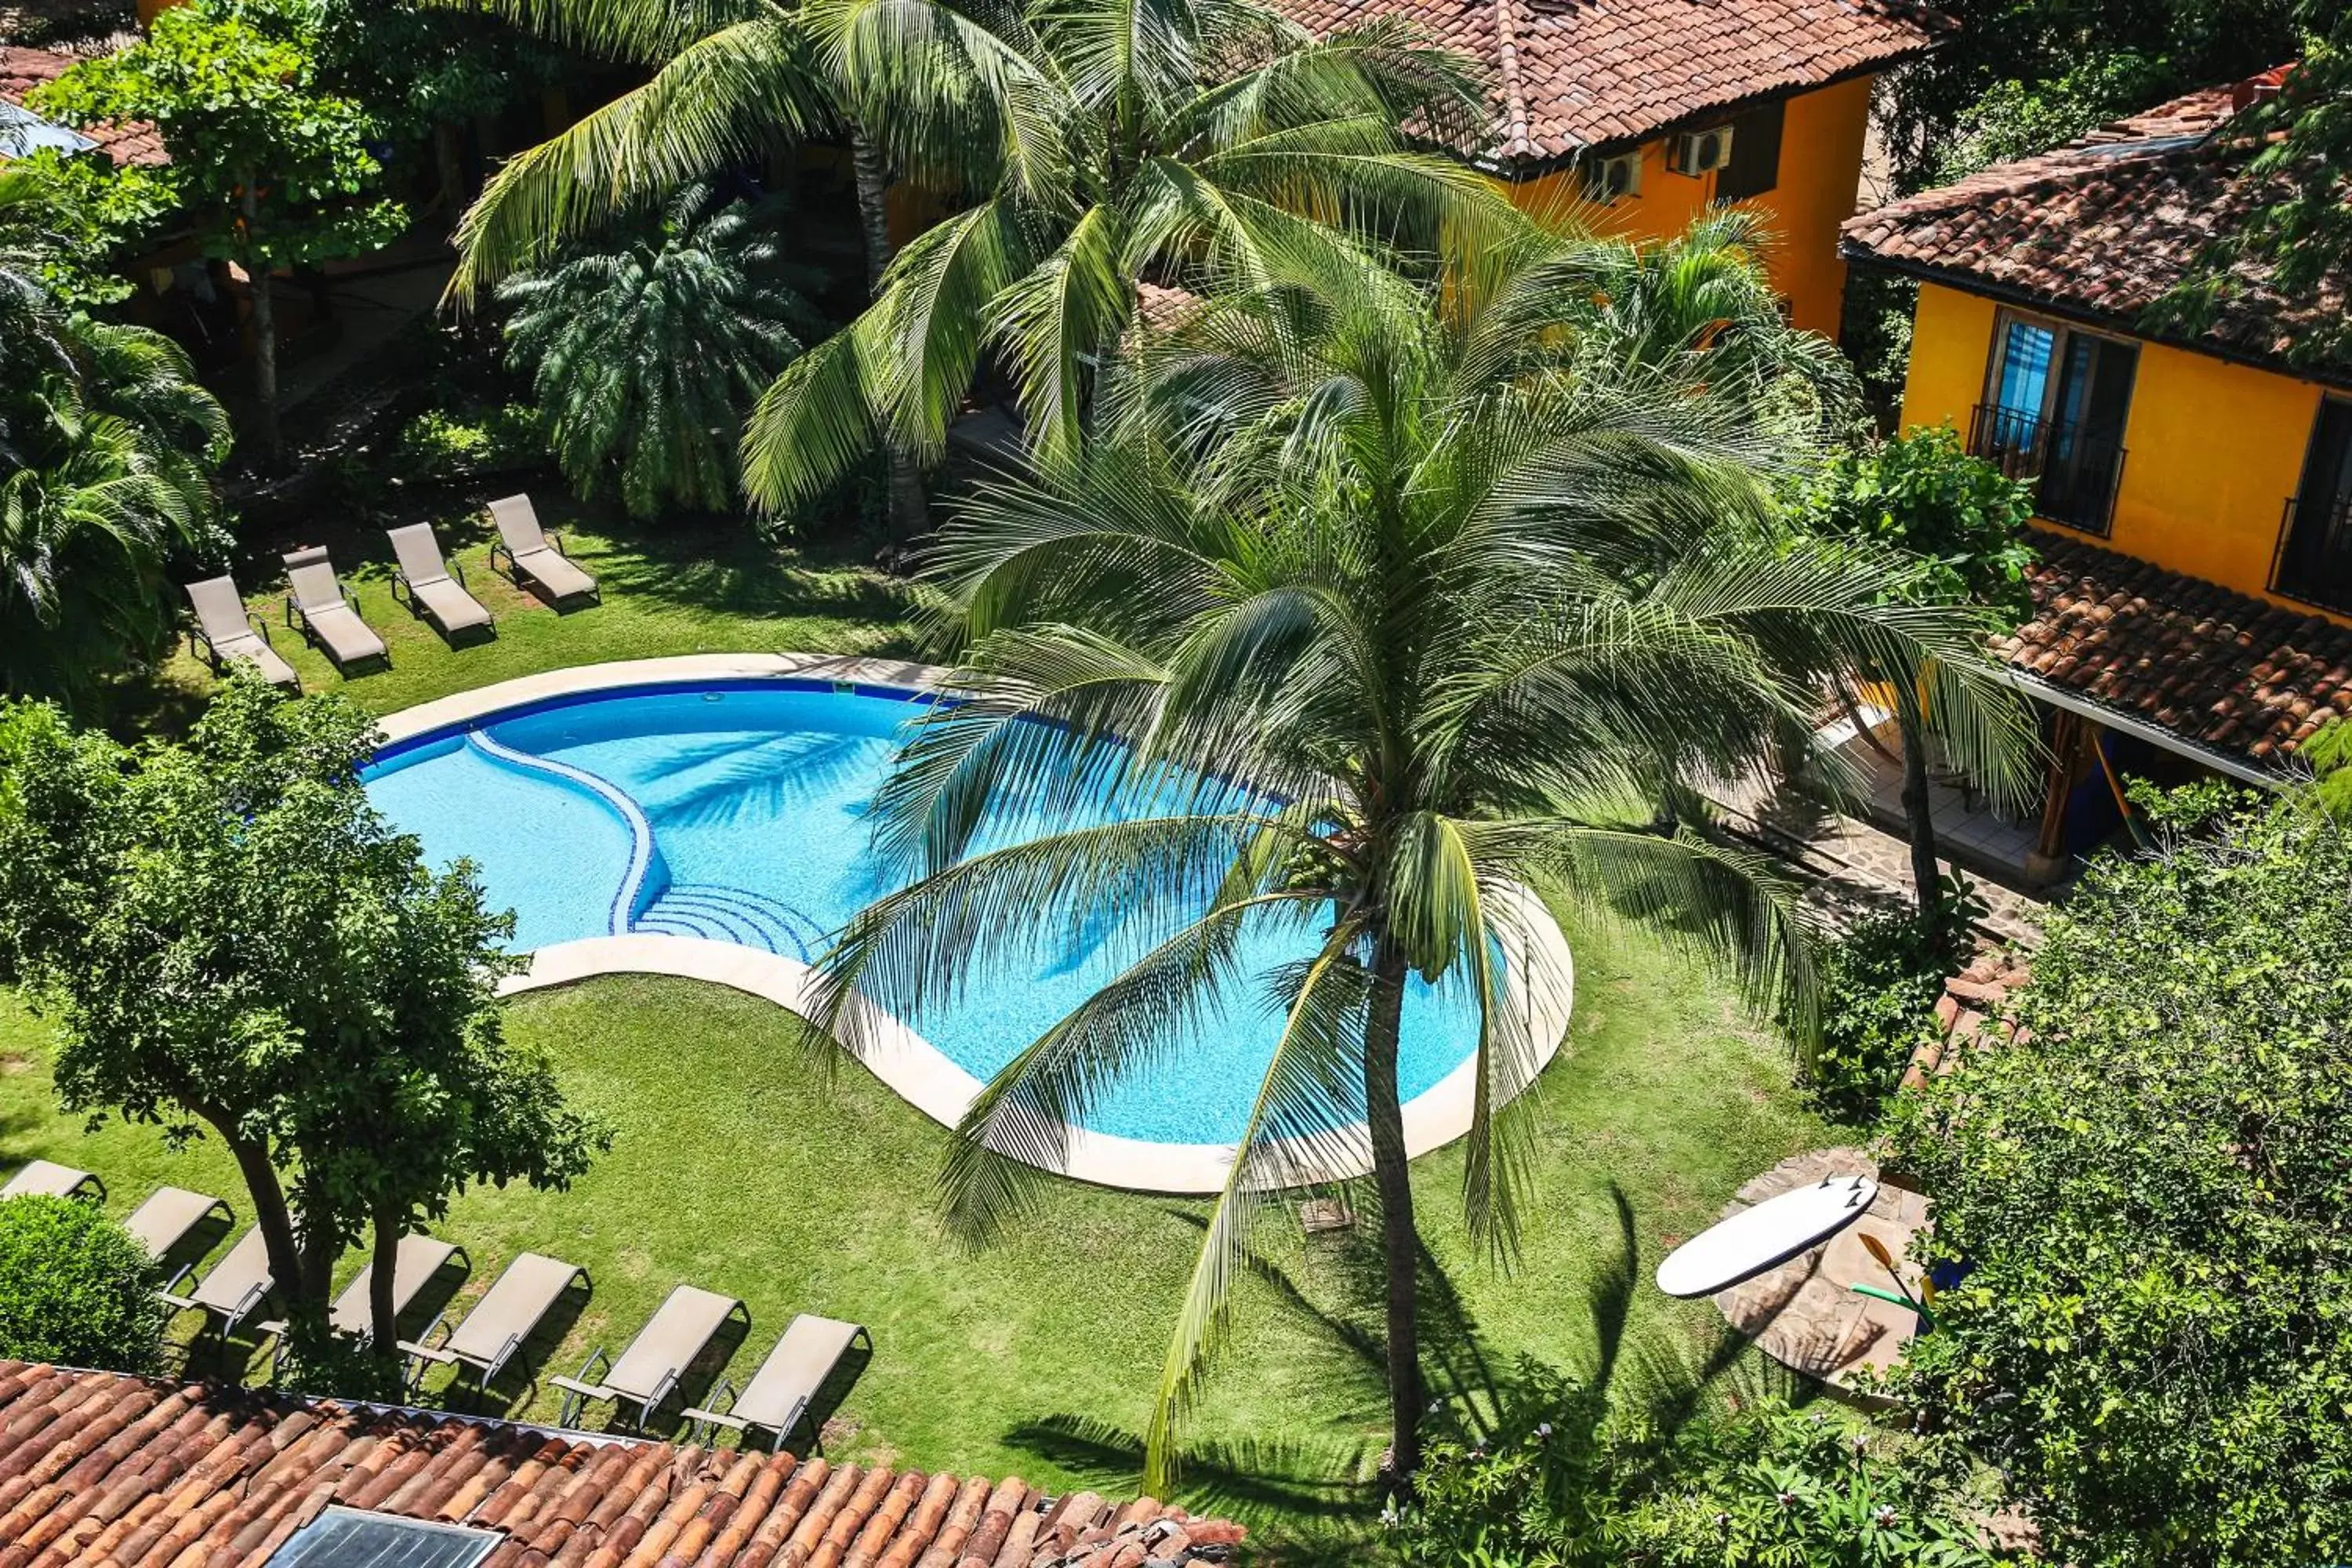 Property building, Pool View in Villas Macondo